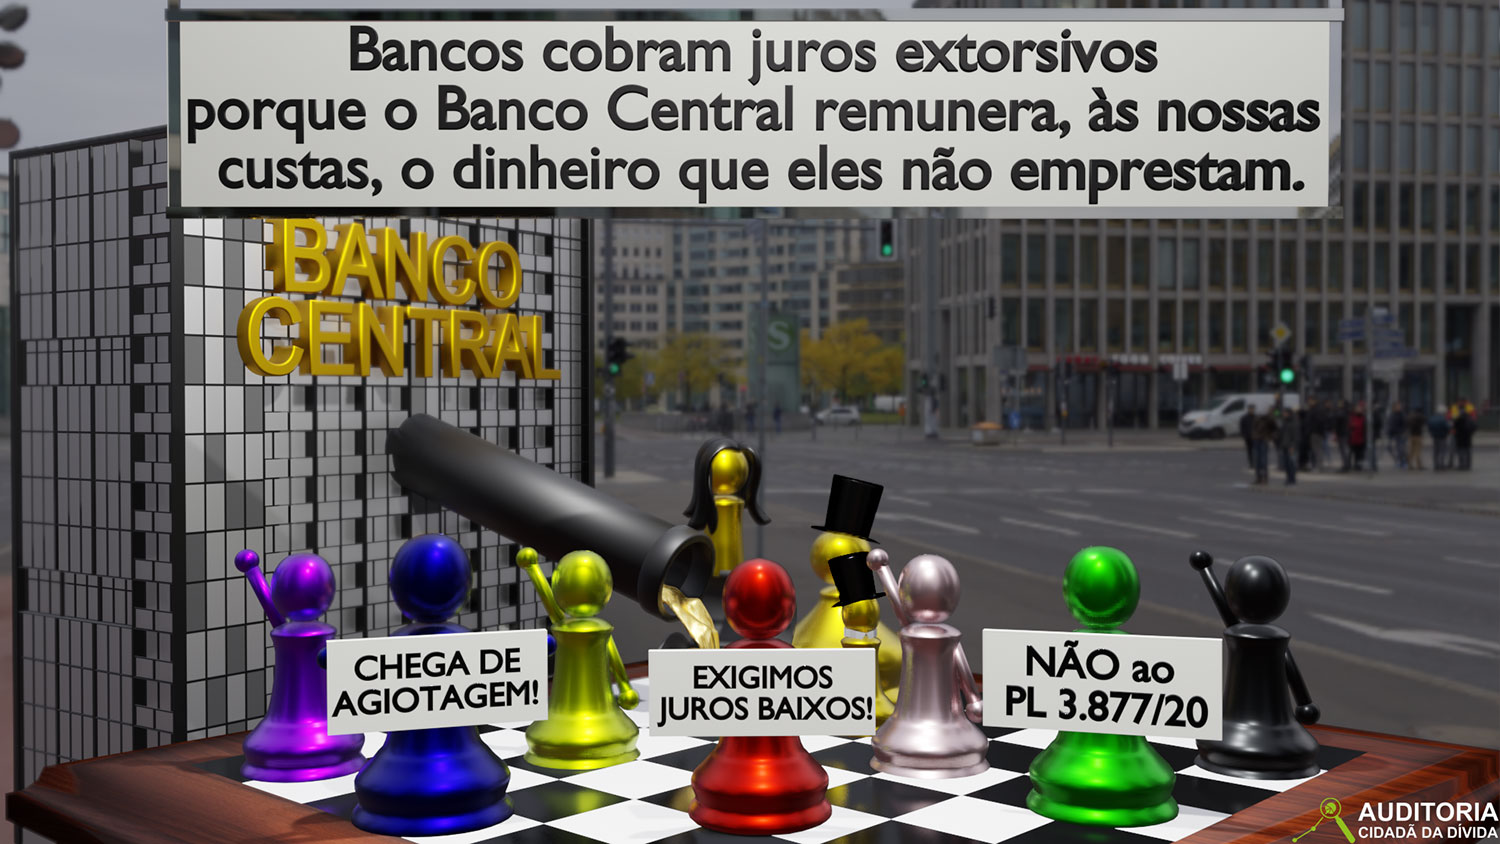 JUROS ALTOS AMARRAM O BRASIL #ÉHORAdeVIRARoJOGO